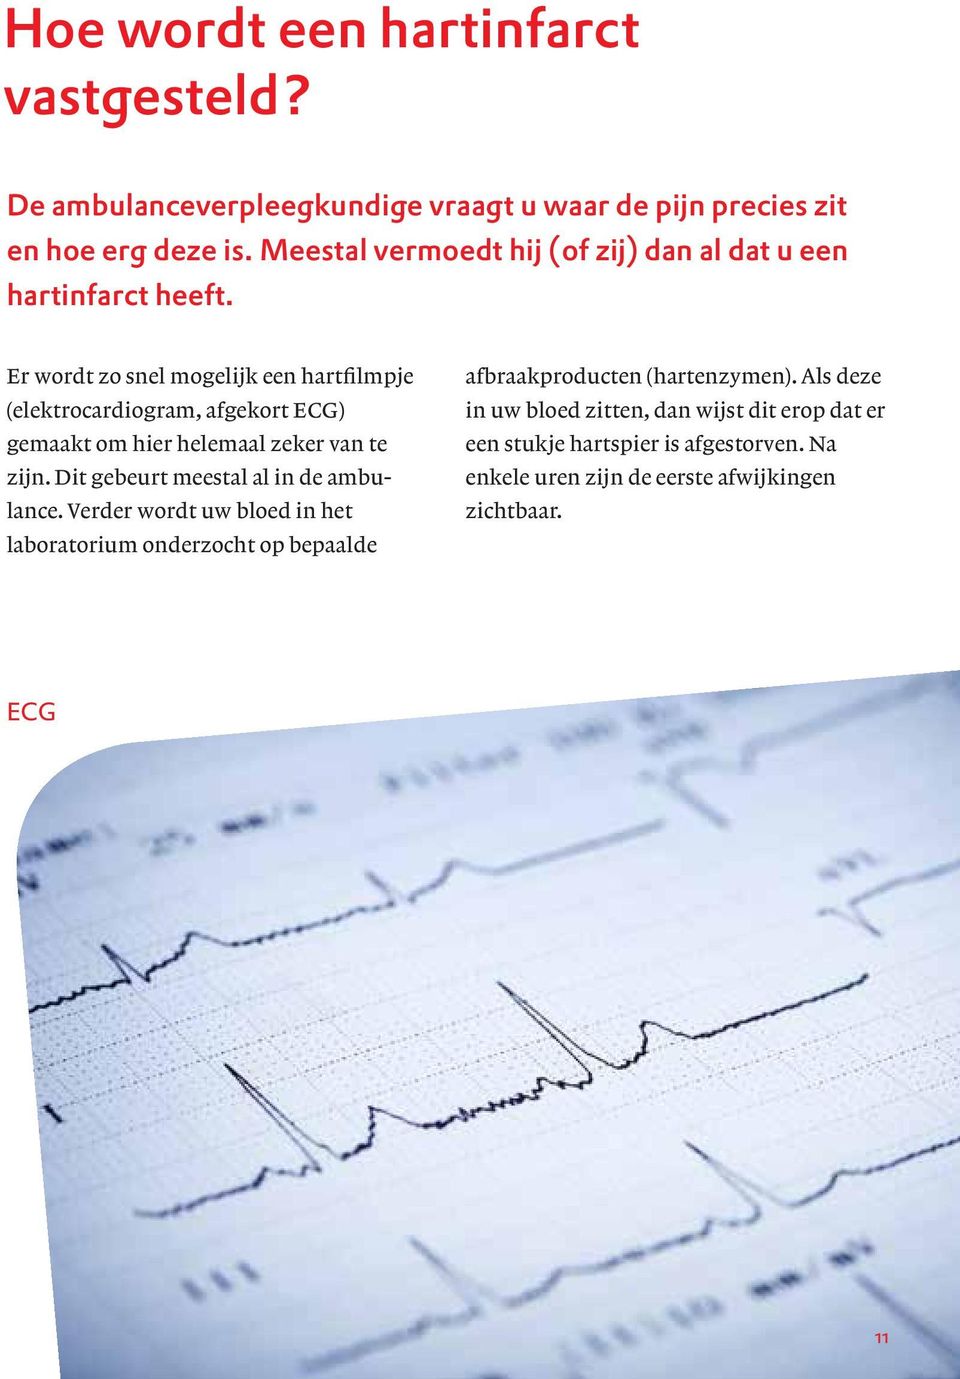 Er wordt zo snel mogelijk een hartfilmpje (elektrocardiogram, afgekort ECG) gemaakt om hier helemaal zeker van te zijn.